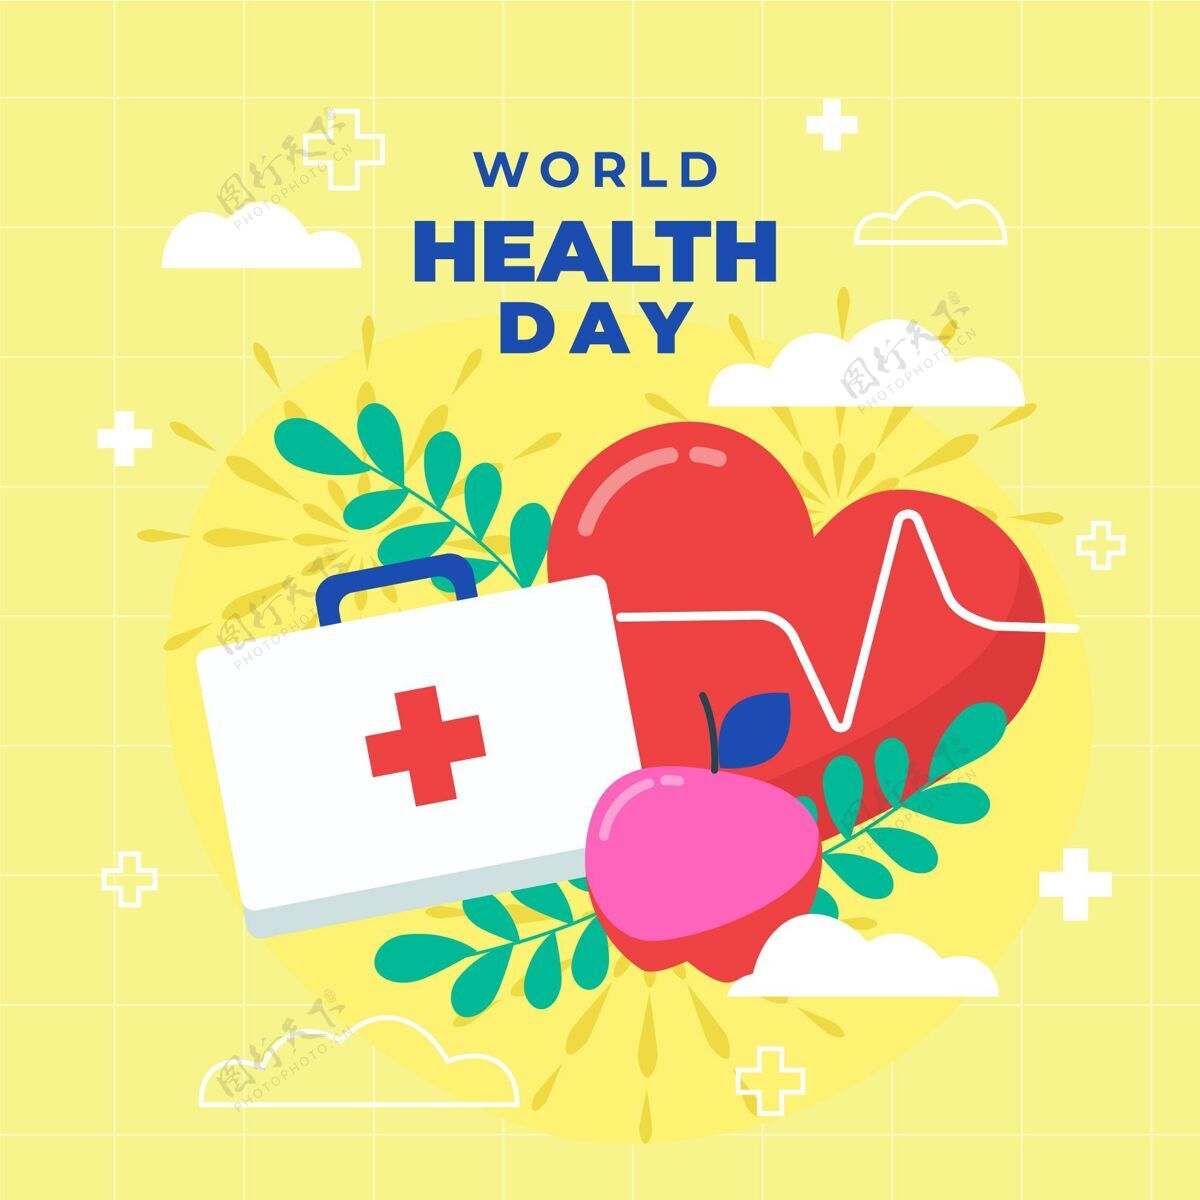 全球世界卫生日心脏和急救箱插图庆典公寓医学